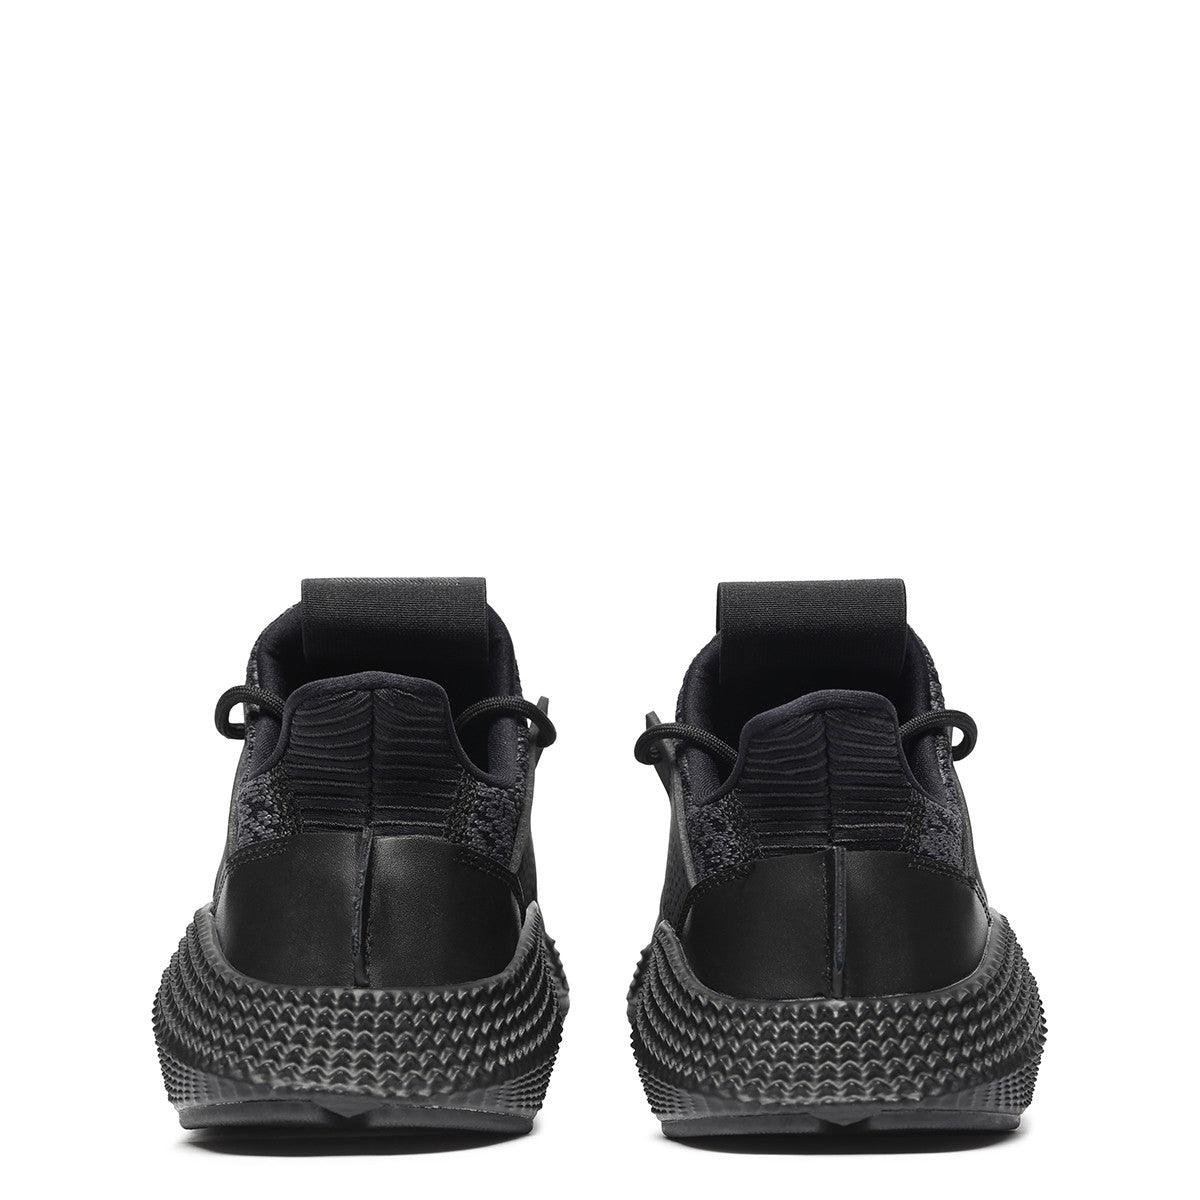 Adidas Prophere triple black shoes - Obeezi.com